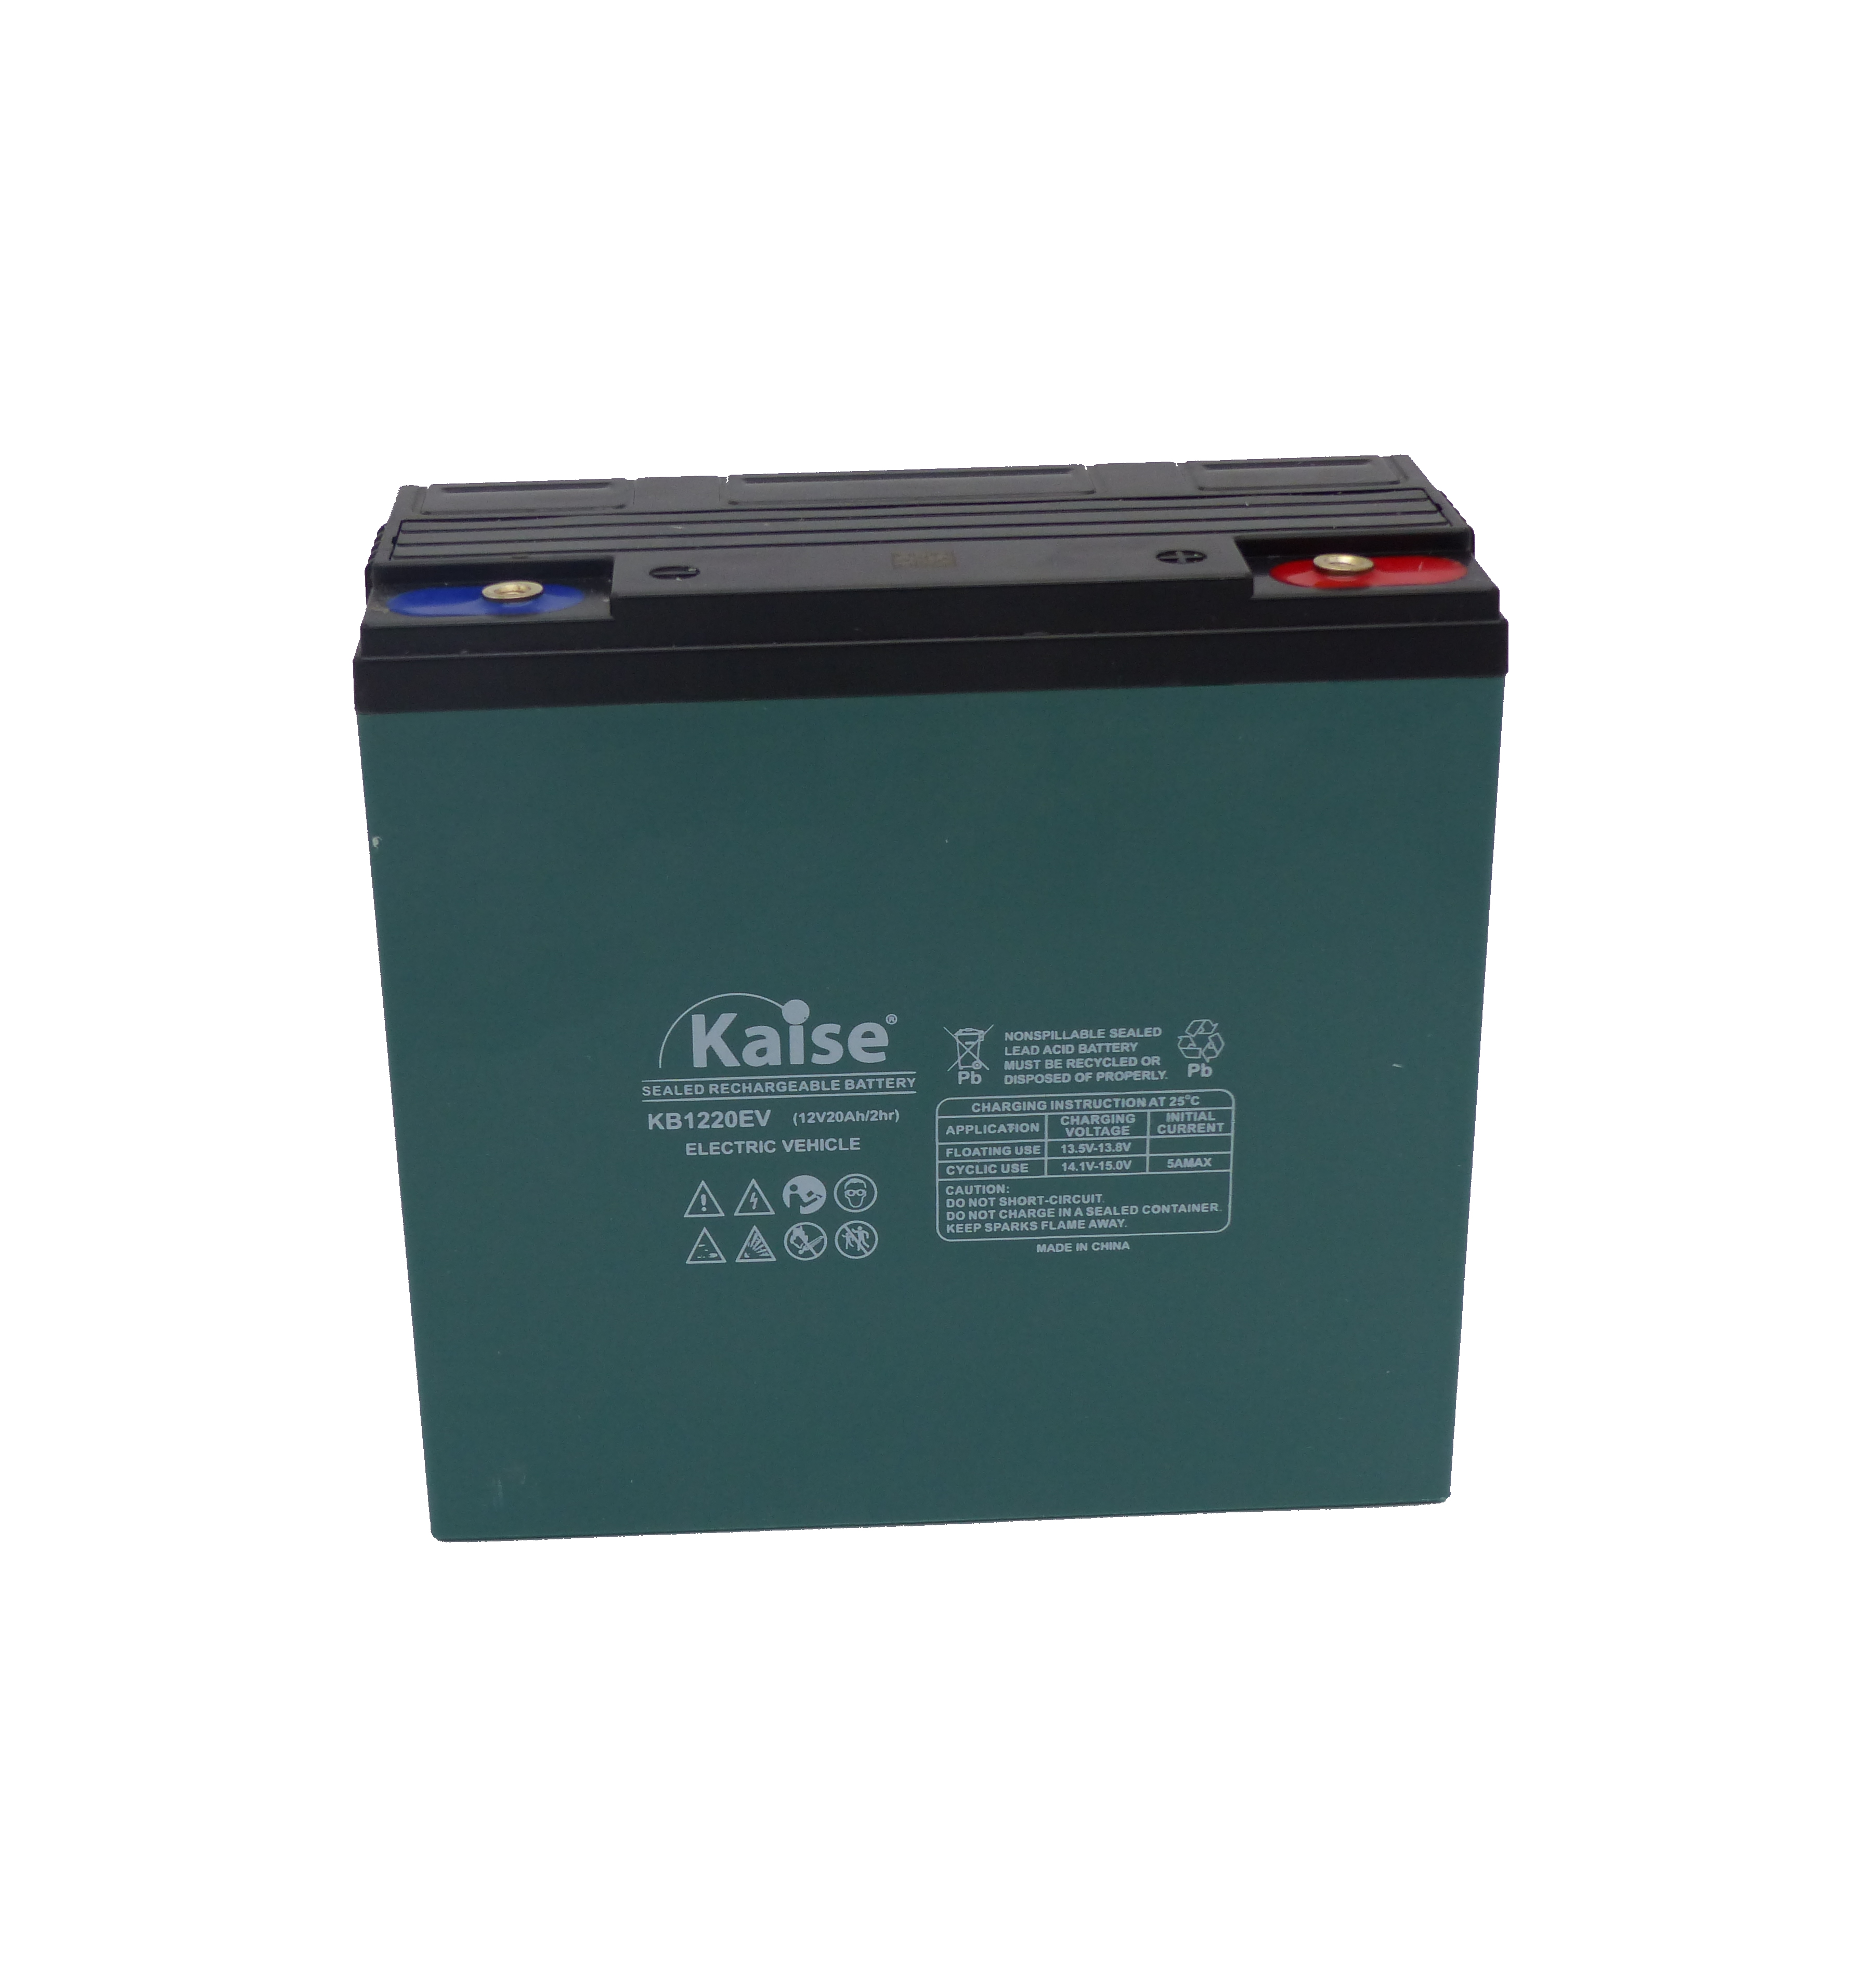 Para aumentar compresión origen BATERÍA KAISE KB1220EV 12V 20AH ELECTRIC VEHICLE